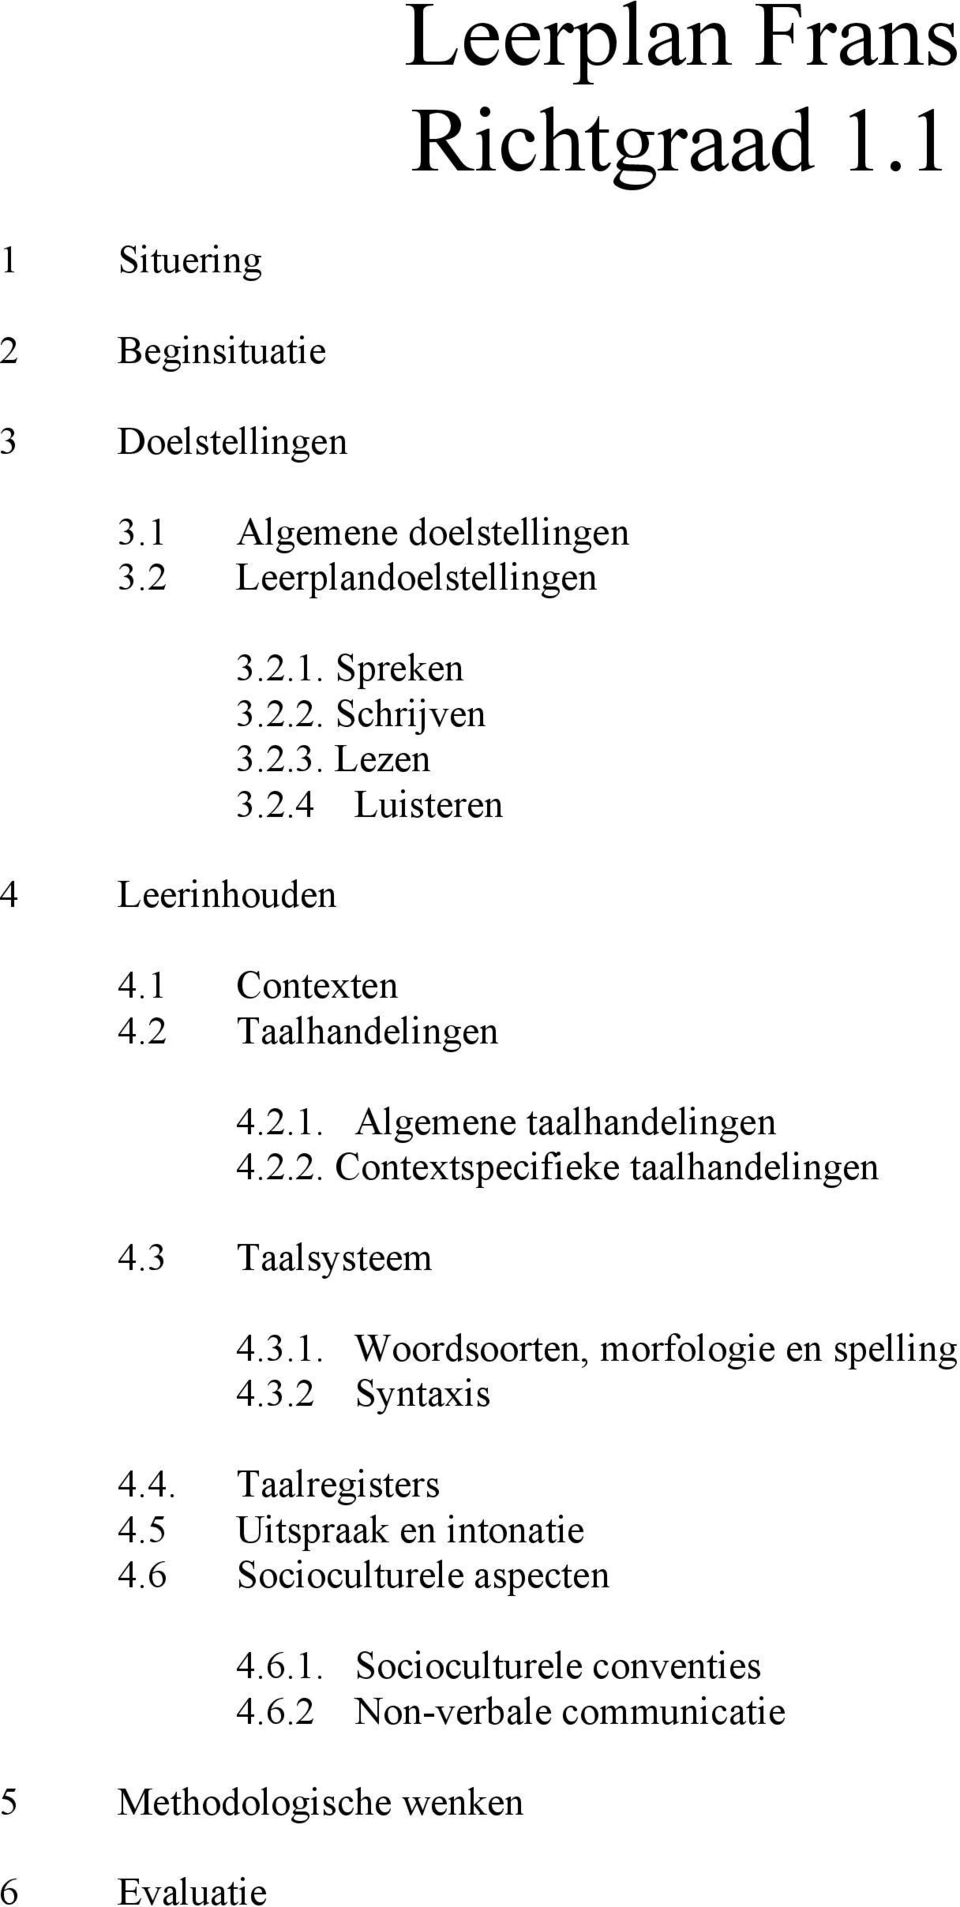 3 Taalsysteem 4.3.1. Woordsoorten, morfologie en spelling 4.3.2 Syntaxis 4.4. Taalregisters 4.5 Uitspraak en intonatie 4.